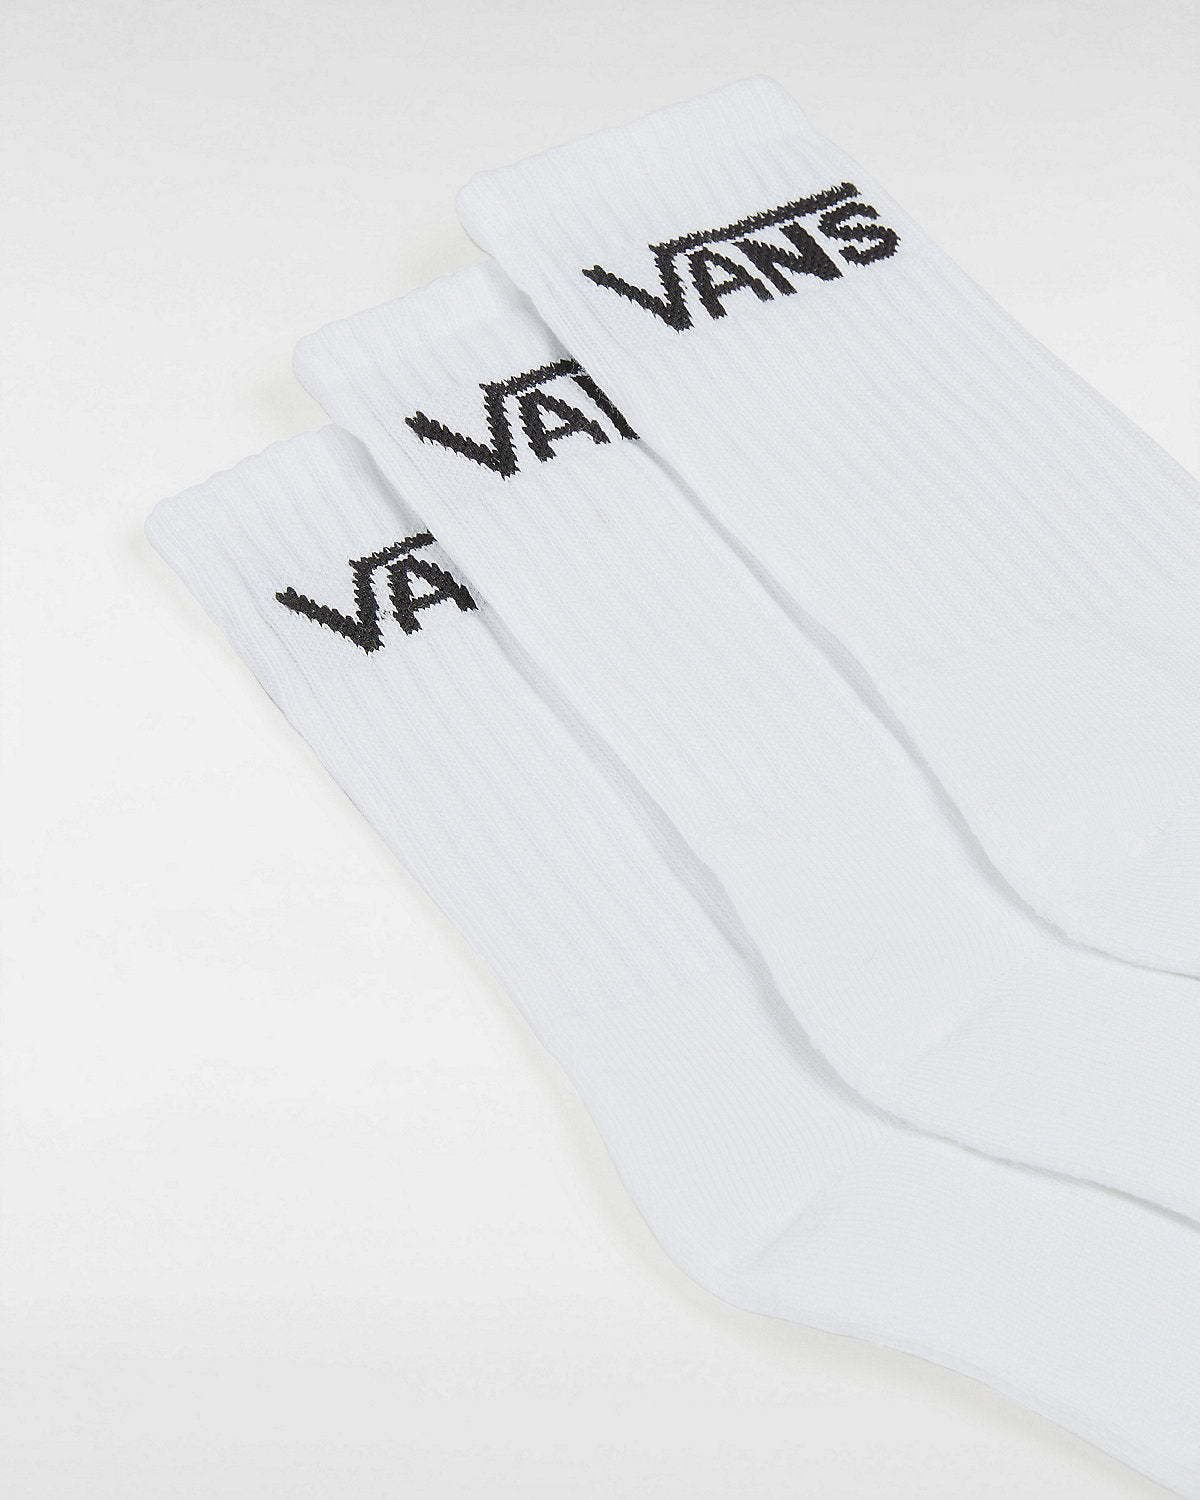 VANS Kids Classic Crew Socks (3 Pairs) - White